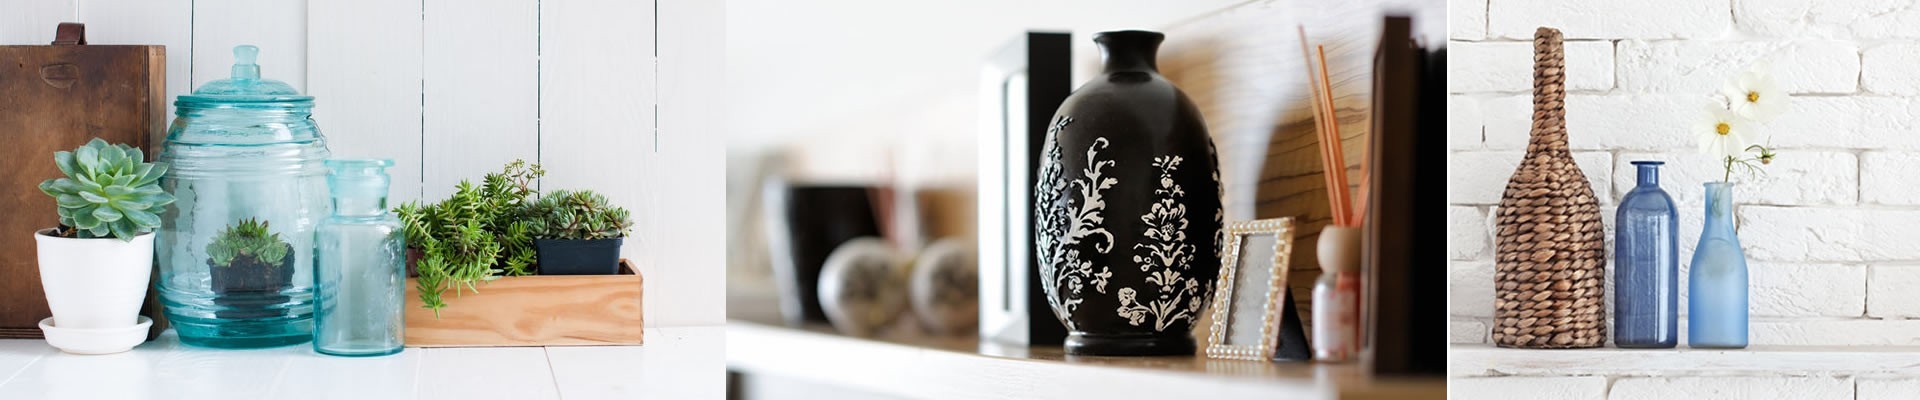 Vases | Flower, Glass, Metal Vases & More